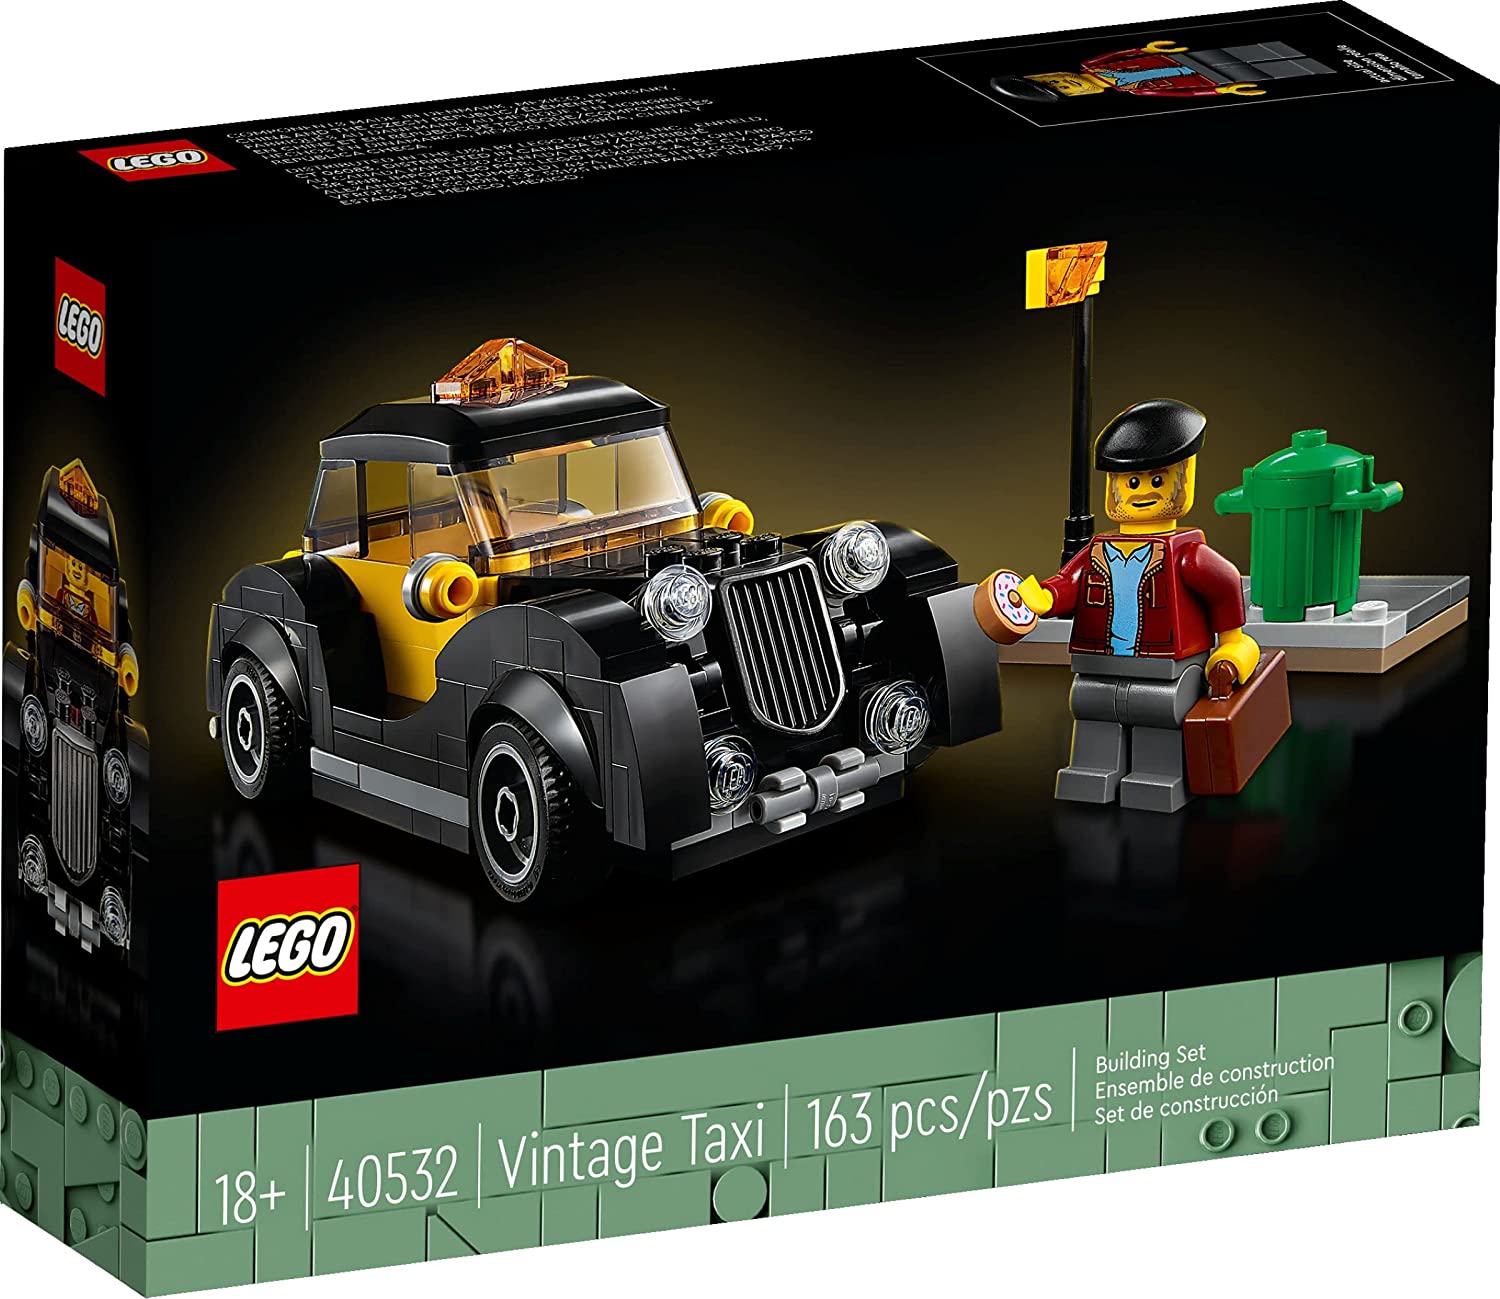 Kép a LEGO Set 40532 Oldtimer-Taxi